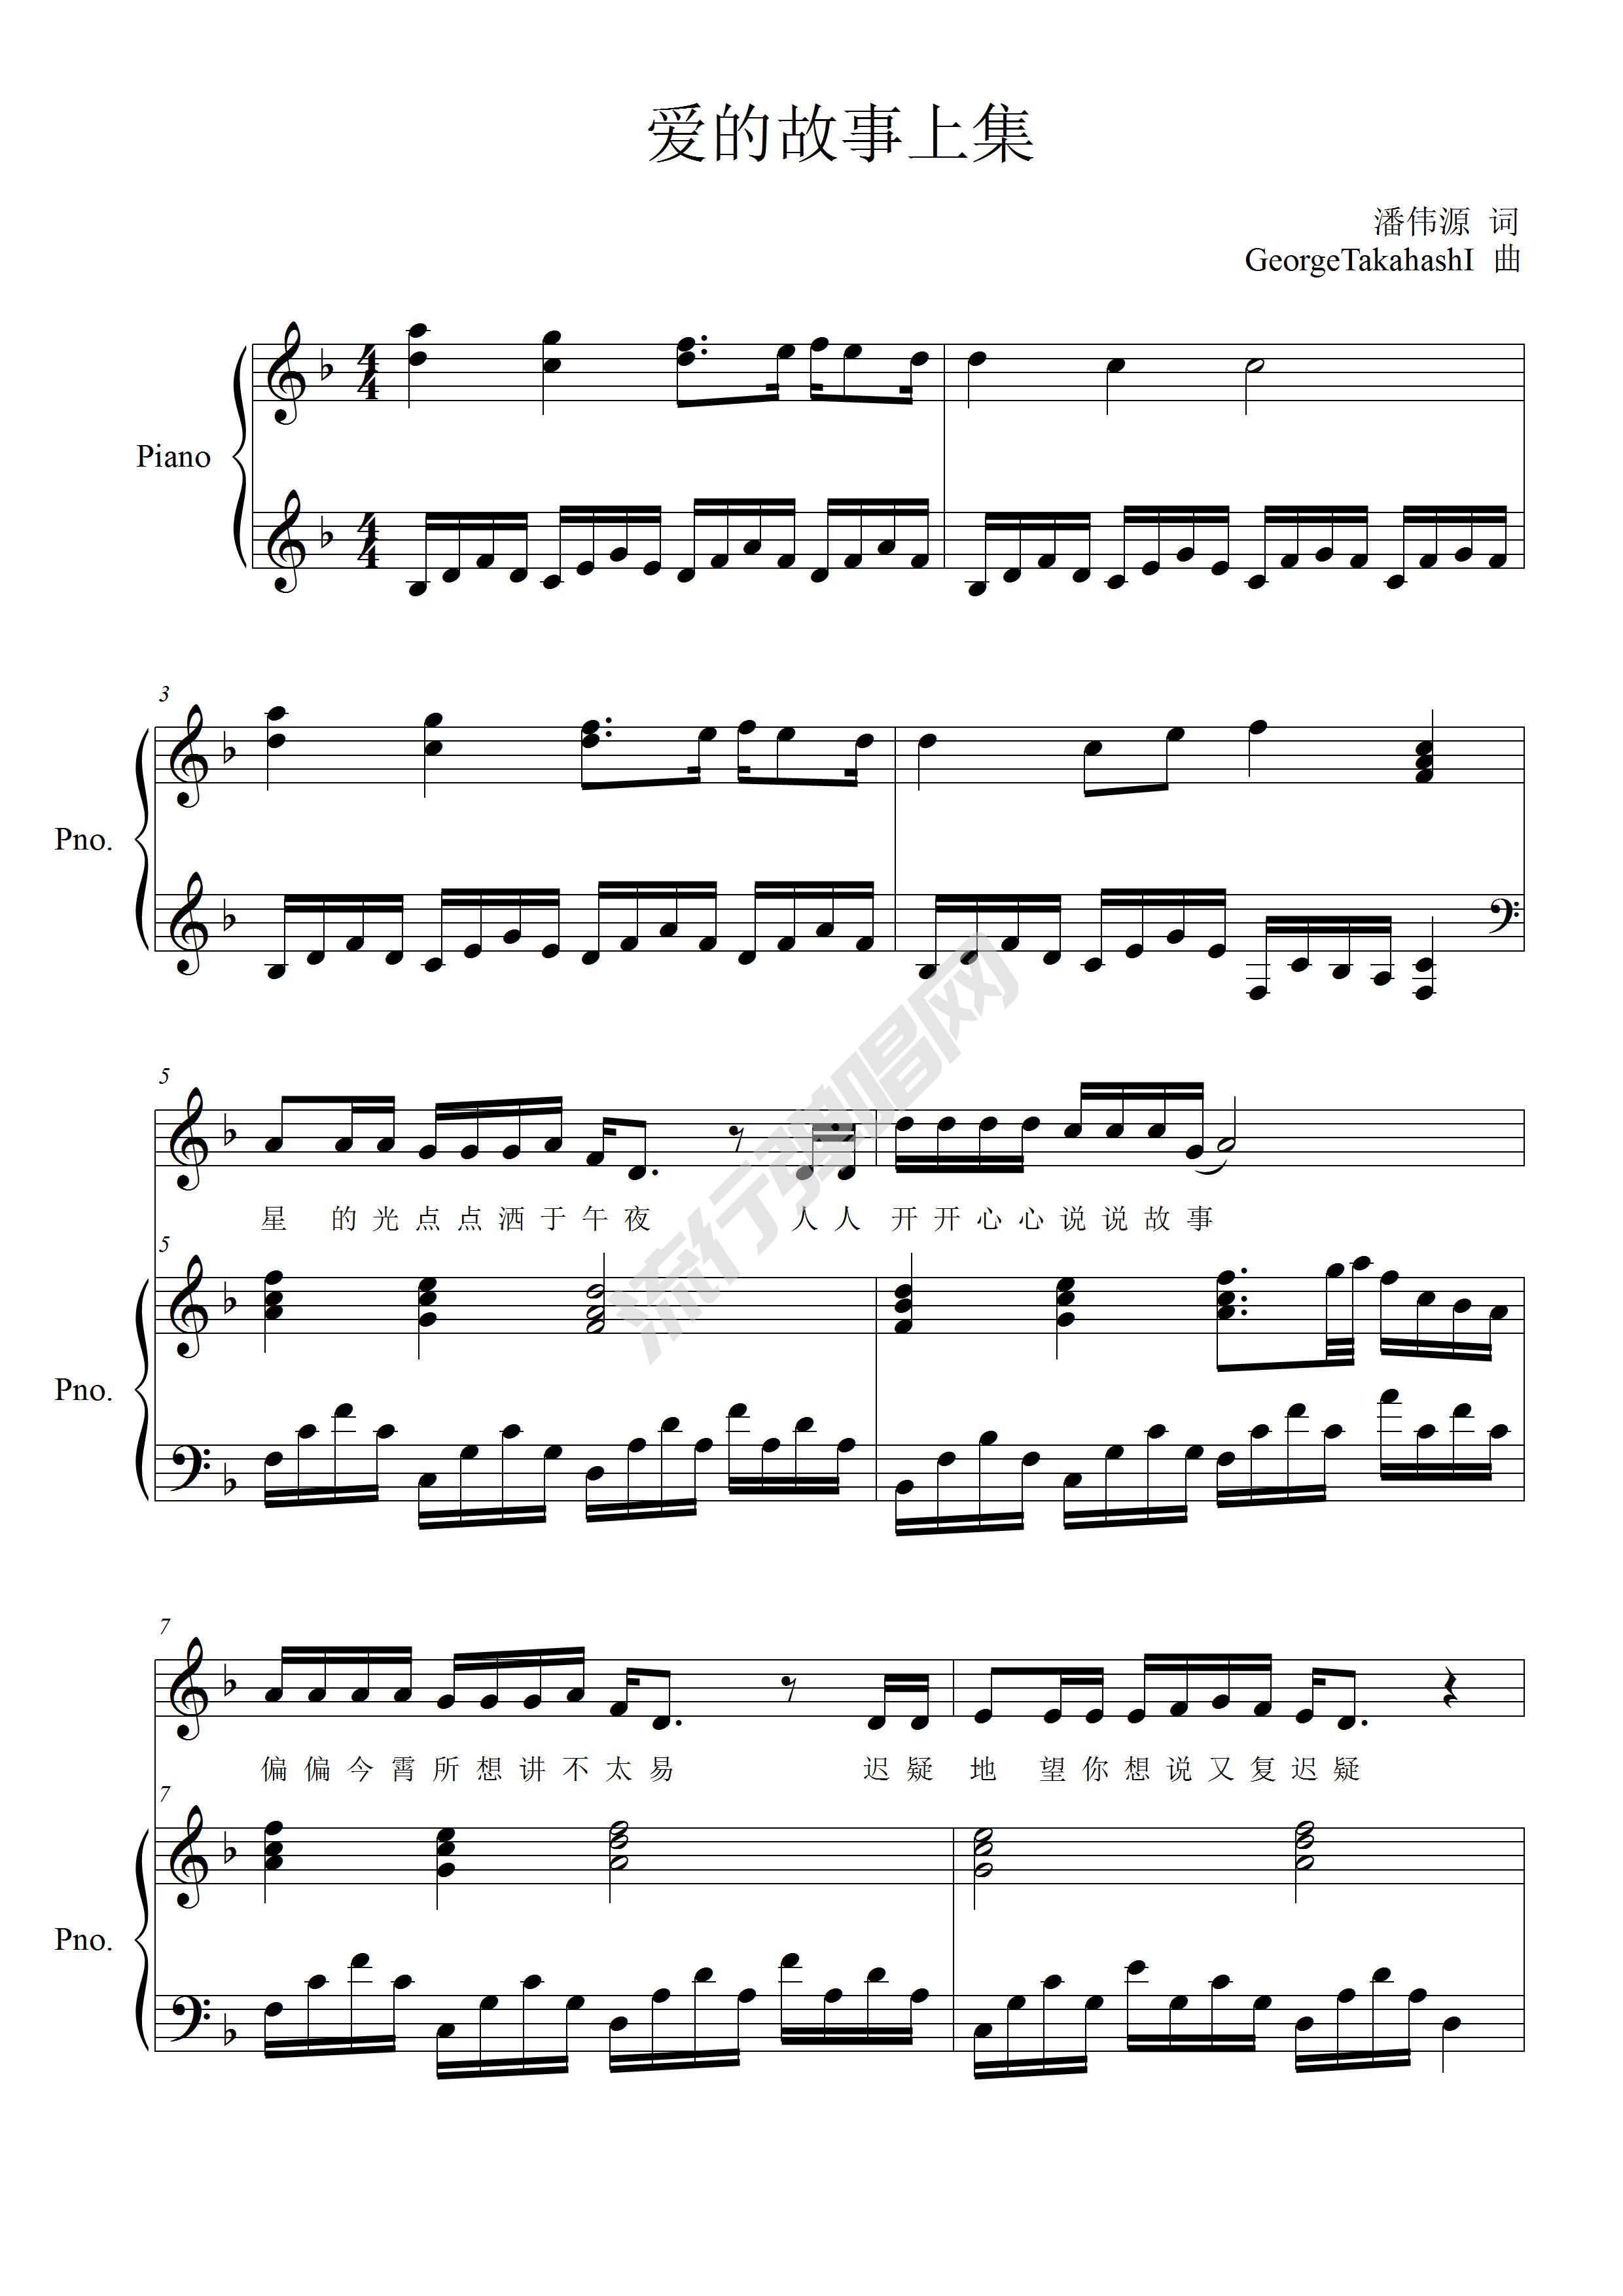 简化版《广东爱情故事》钢琴谱 - 初学者最易上手 - 广东雨神带指法钢琴谱子 - 钢琴简谱